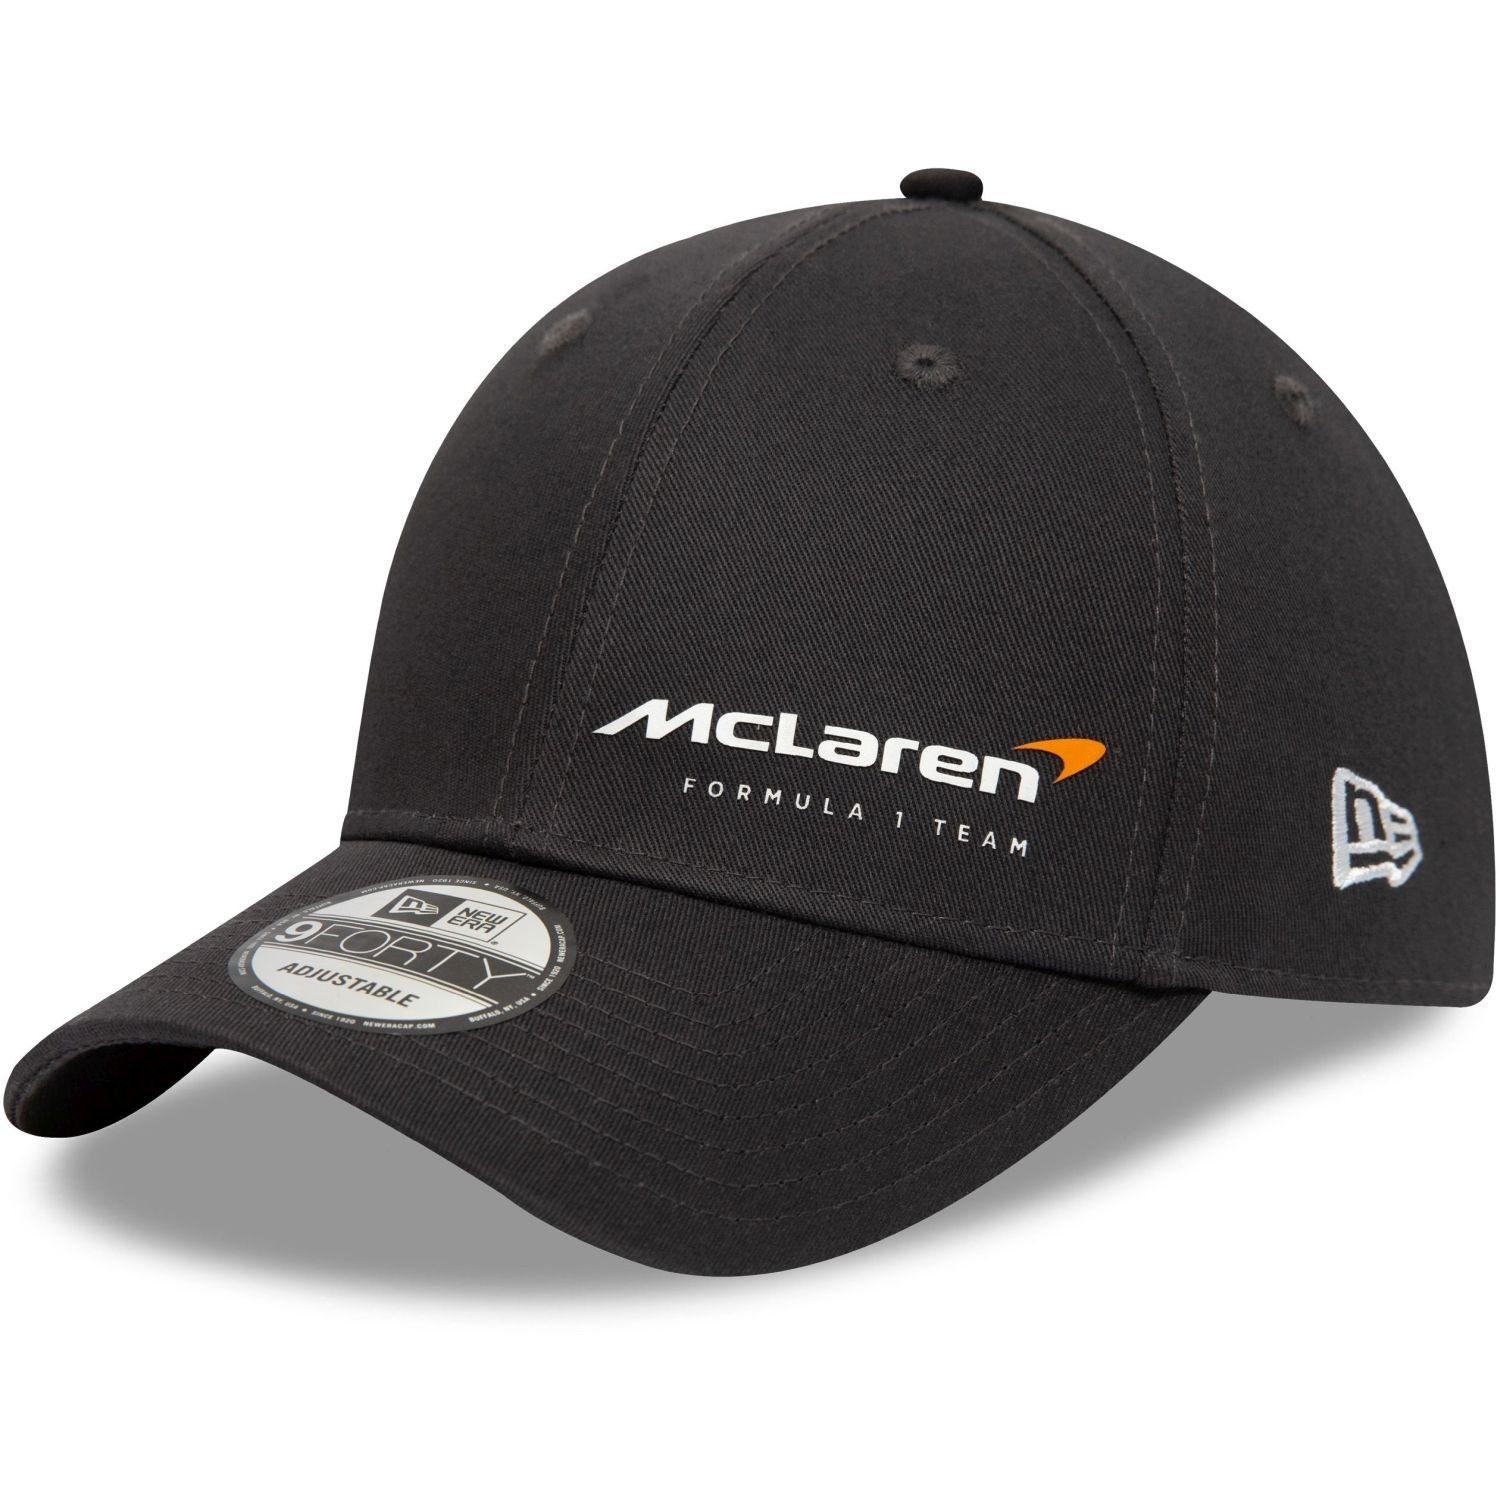 New Cap Baseball 9Forty McLaren Formula Era 1